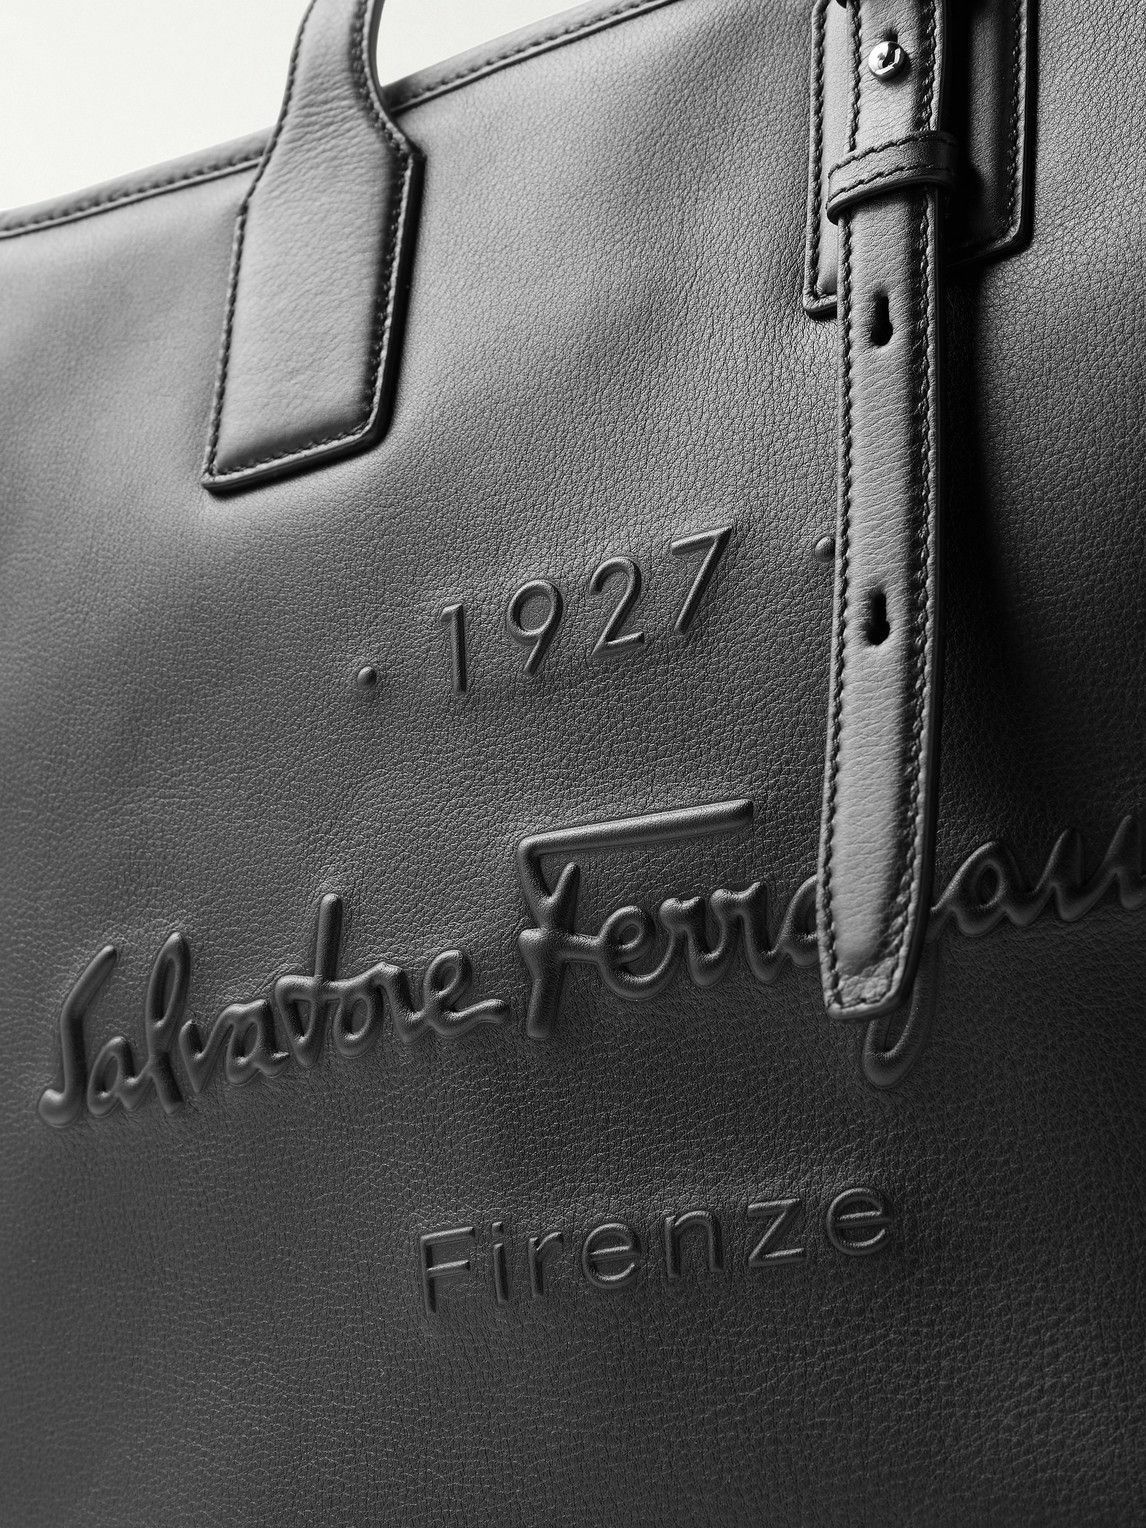 Salvatore Ferragamo Black/Red Leather Laptop Bag Salvatore